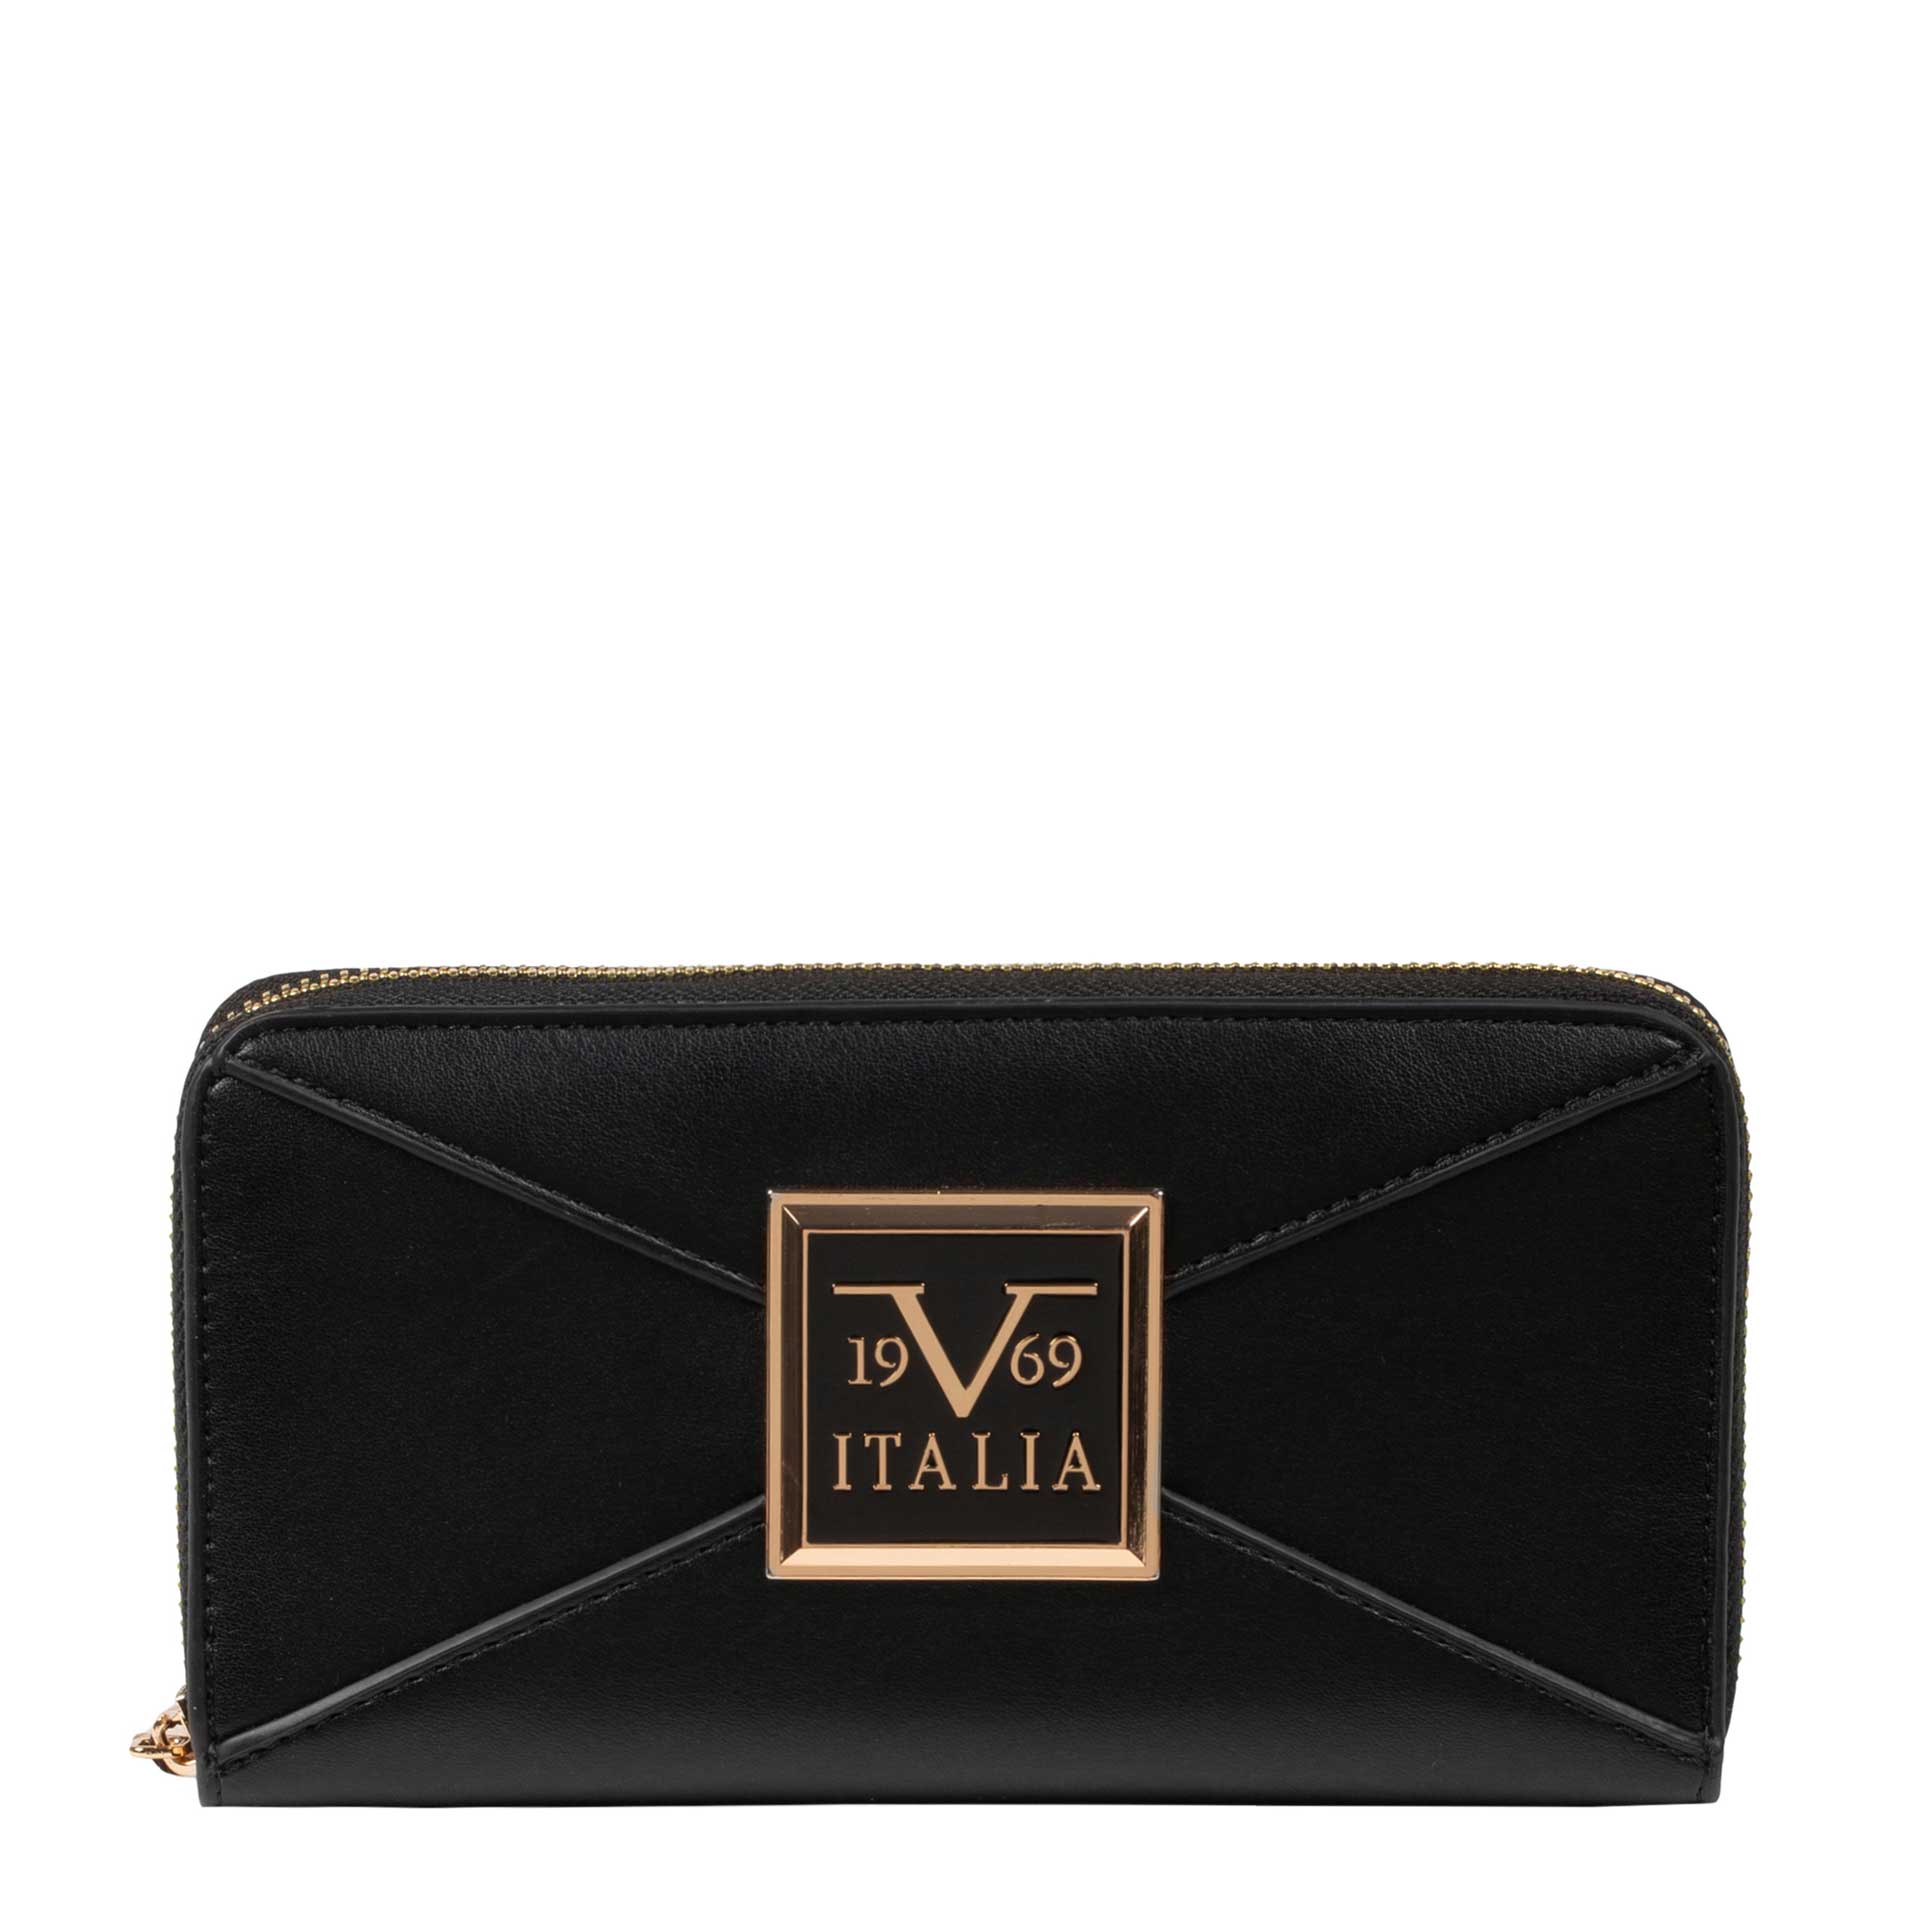 19V69 Italia by Versace Raissa Damen Geldbörse black